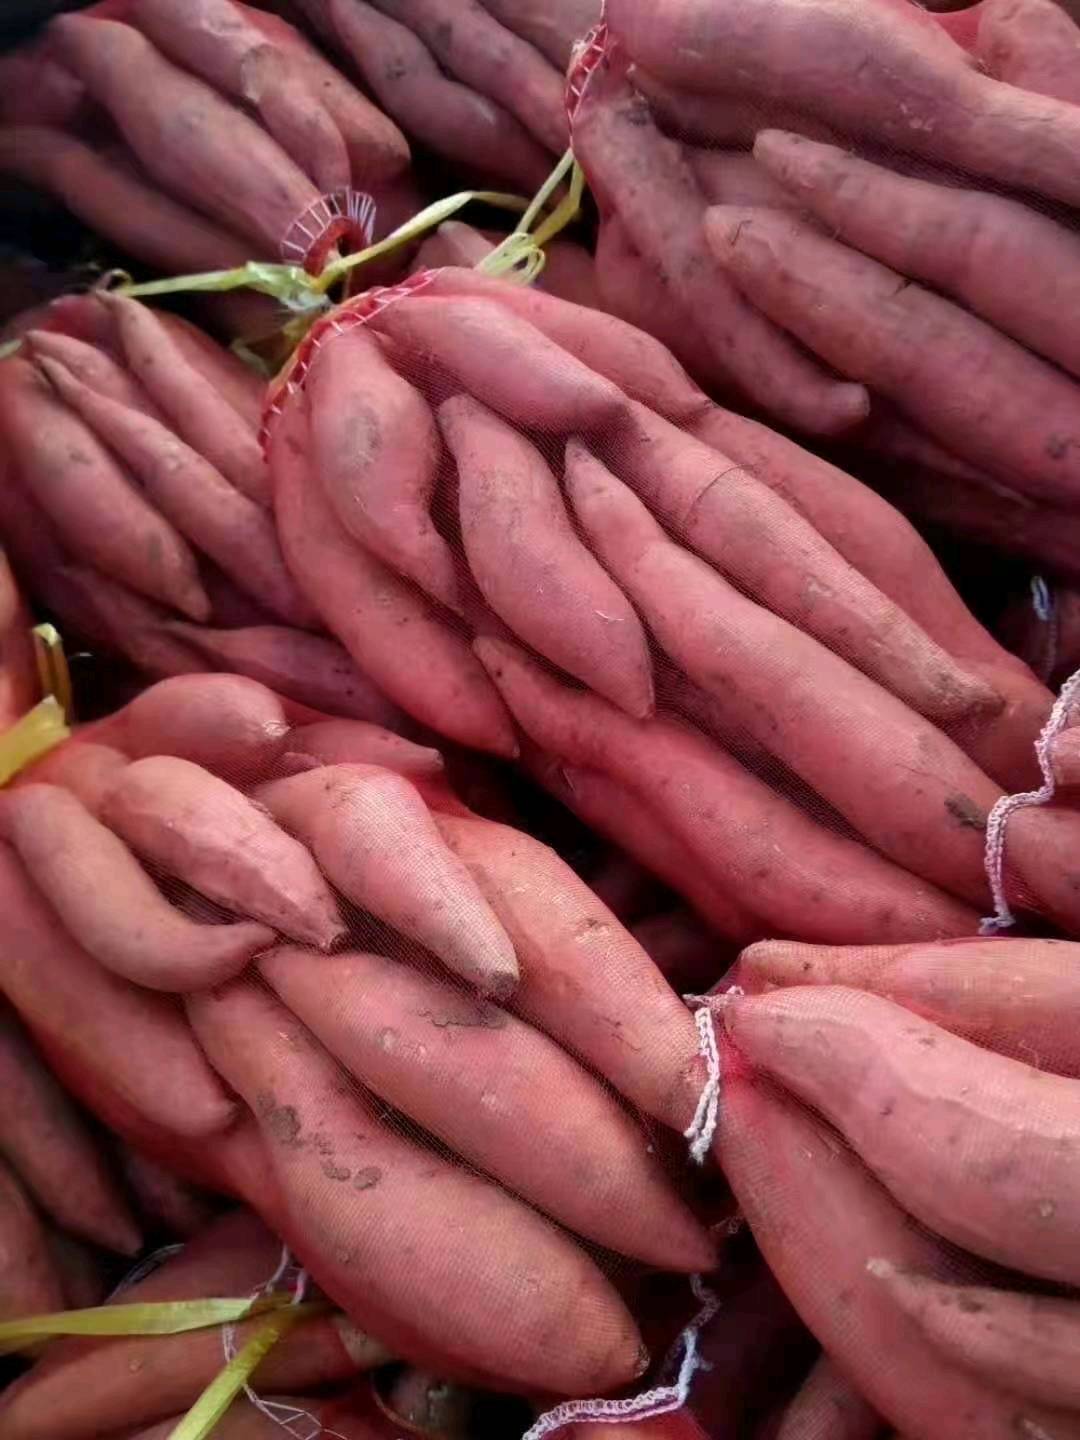 西瓜红红薯大量供应中电话15265199952货源充足价格便宜支持全国发货质量保证，丘陵沙地，口感脆甜可口，电商社区团购一件代发。欢迎咨询。